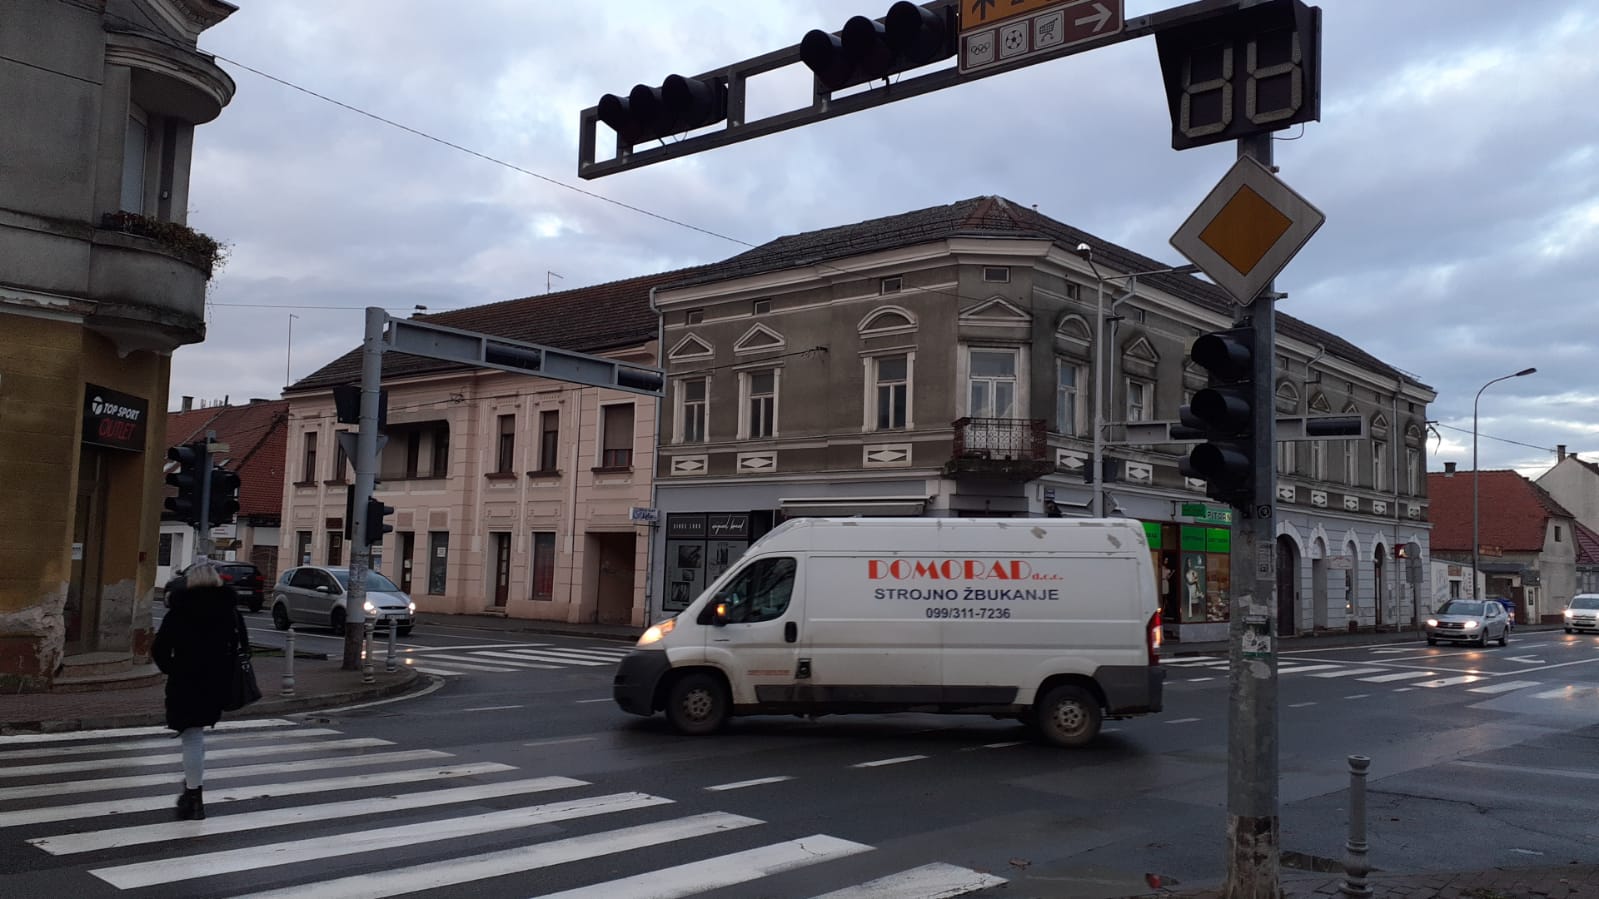 Otkrivamo kad će biti popravljen semafor kod bjelovarskog placa